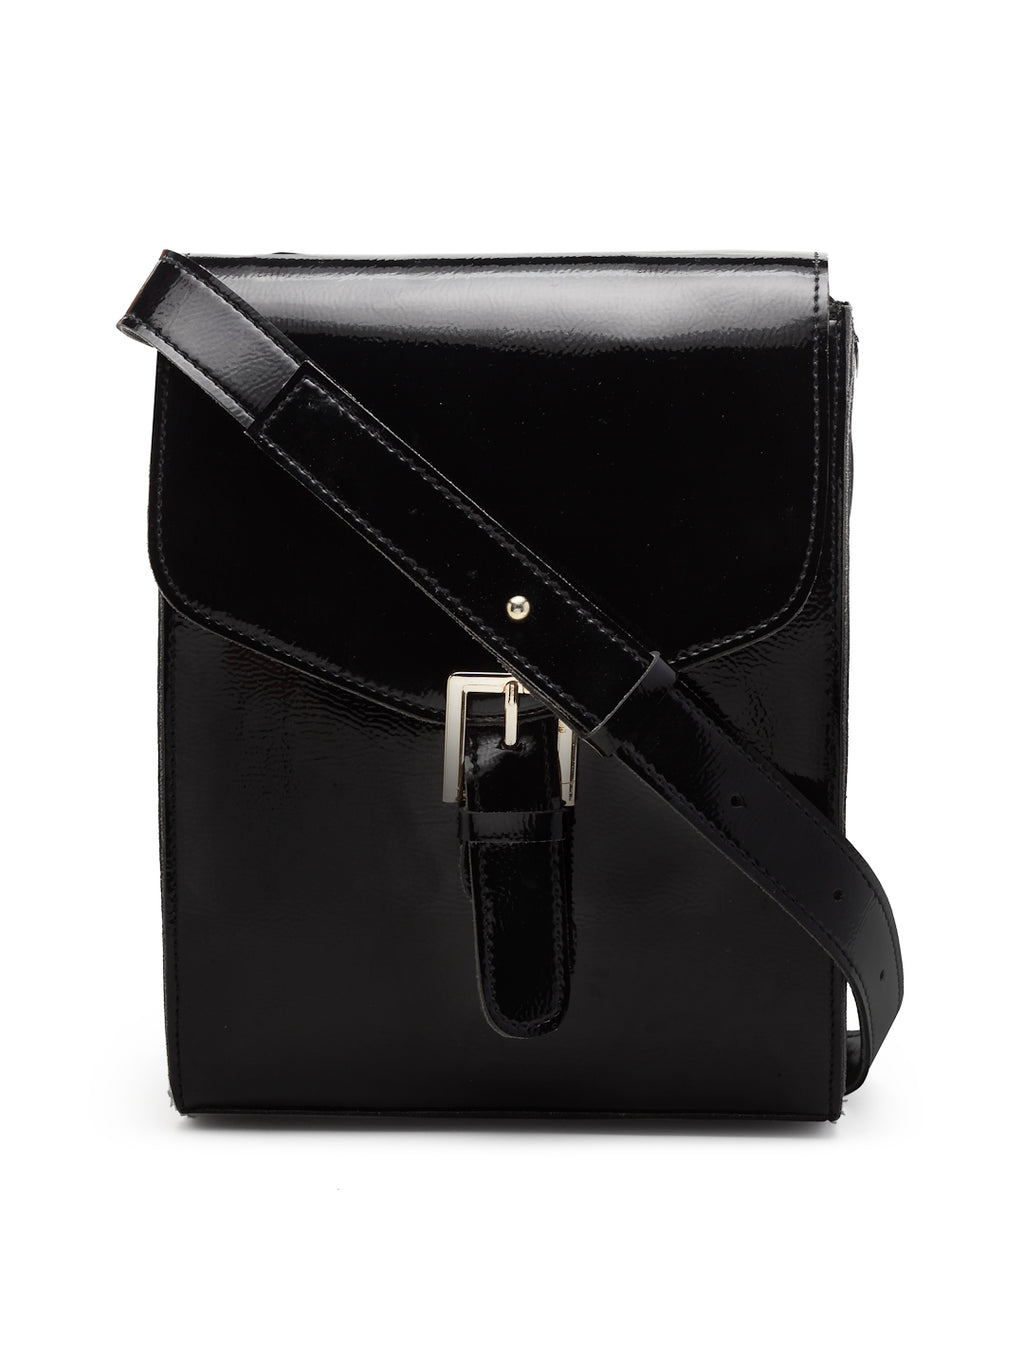 Retro Crossbody Bag, Full Grain Cognac Brown Leather, Postman Bag,  Minimalistic & Timeless Design, Gift for Her, Messenger Bag - Etsy